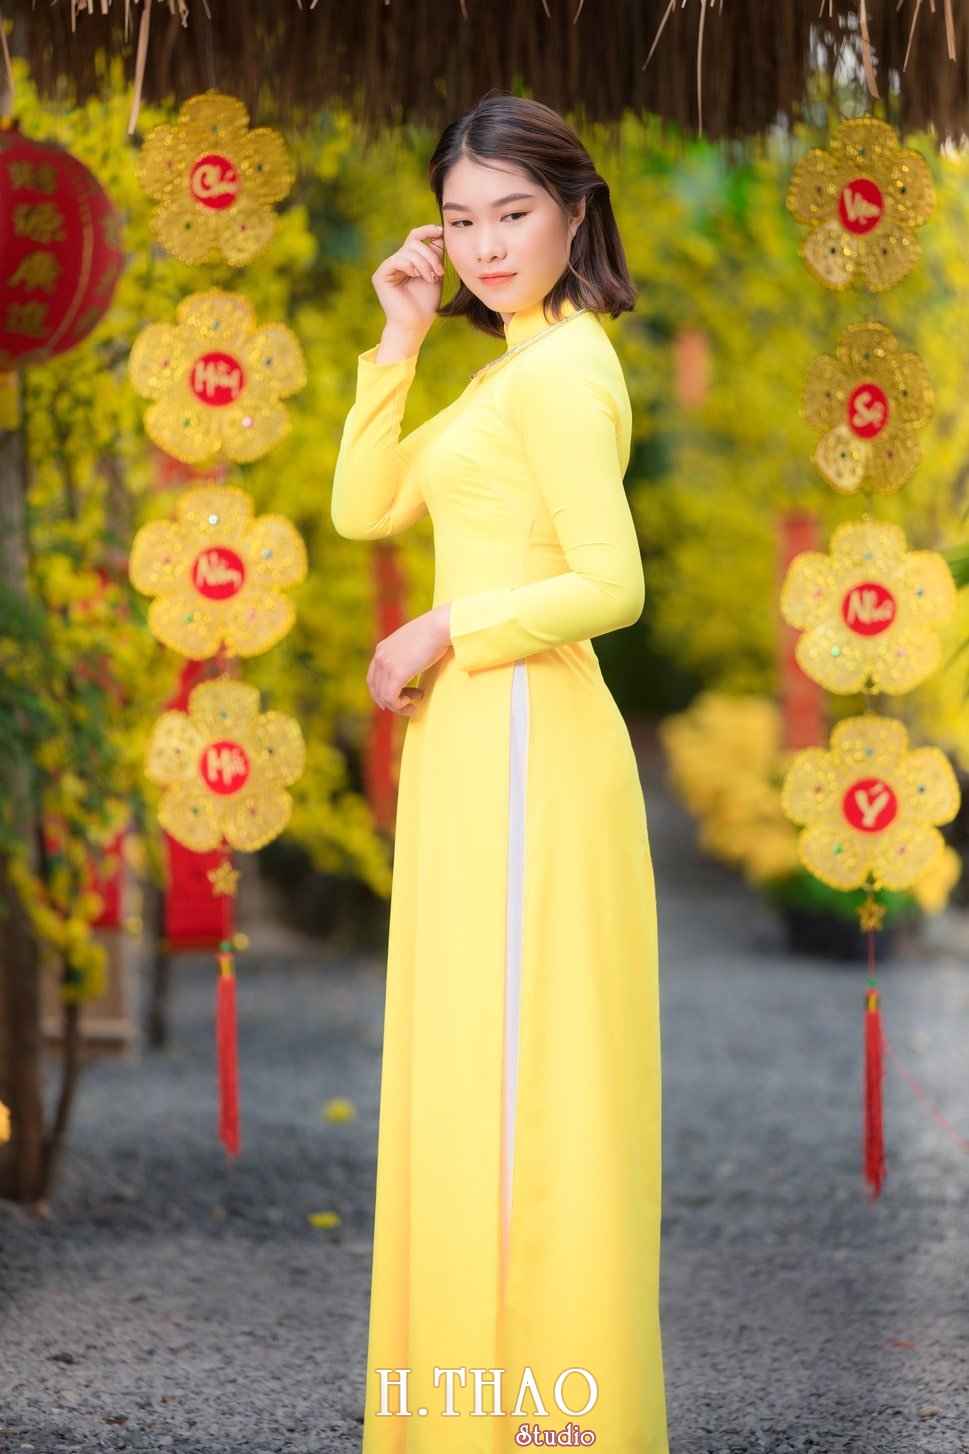 Ao dai tet 1 - Top 40 ảnh áo dài chụp với Hoa đào, hoa mai tết tuyệt đẹp- HThao Studio